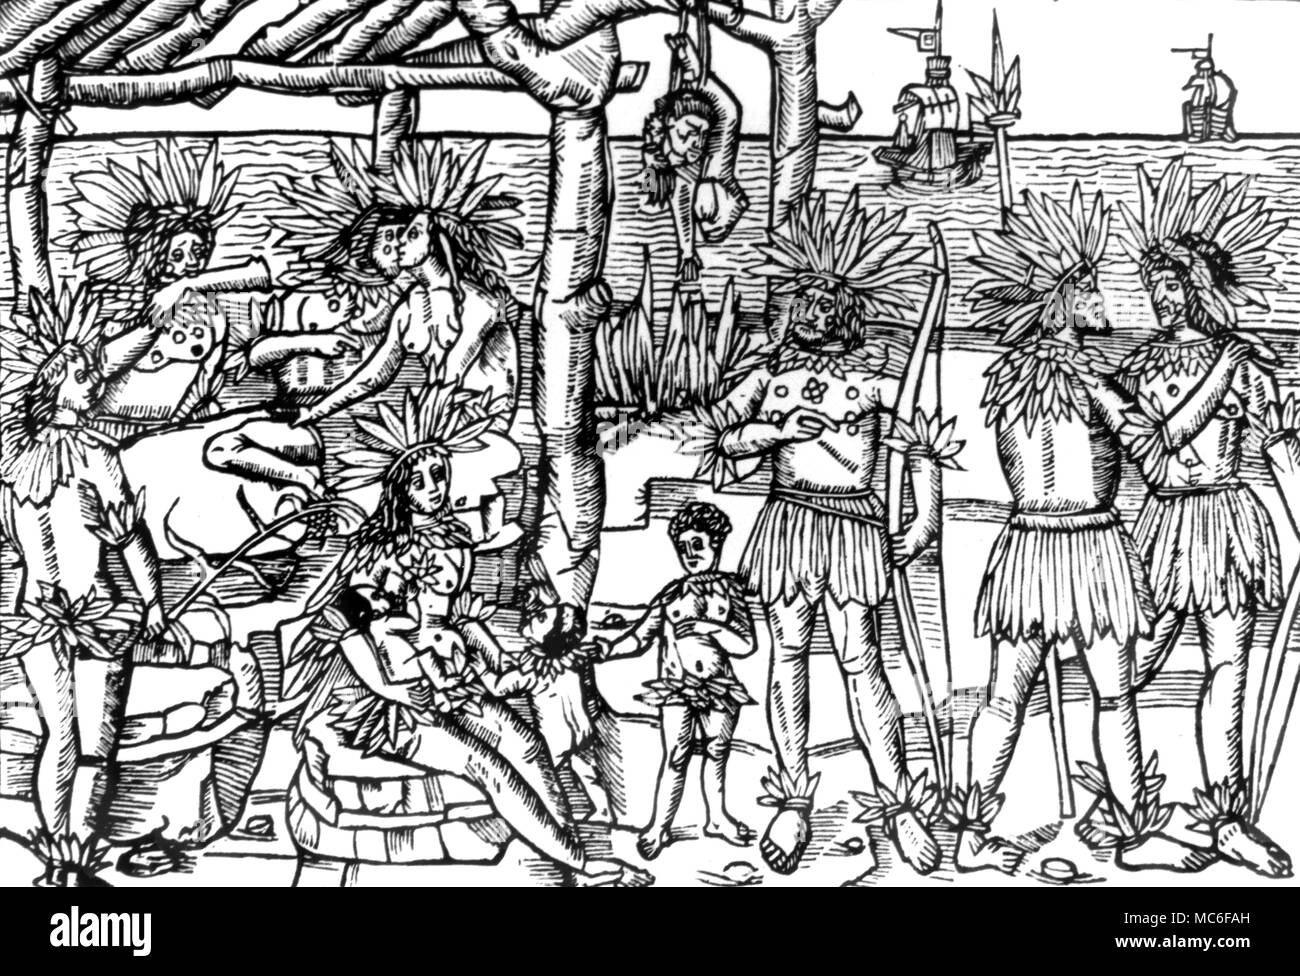 Phantasievolle Darstellung der südamerikanischen Indianer (Brasilien) Rösten und frisst Menschenfleisch. Holzschnitt von 1505. Stockfoto